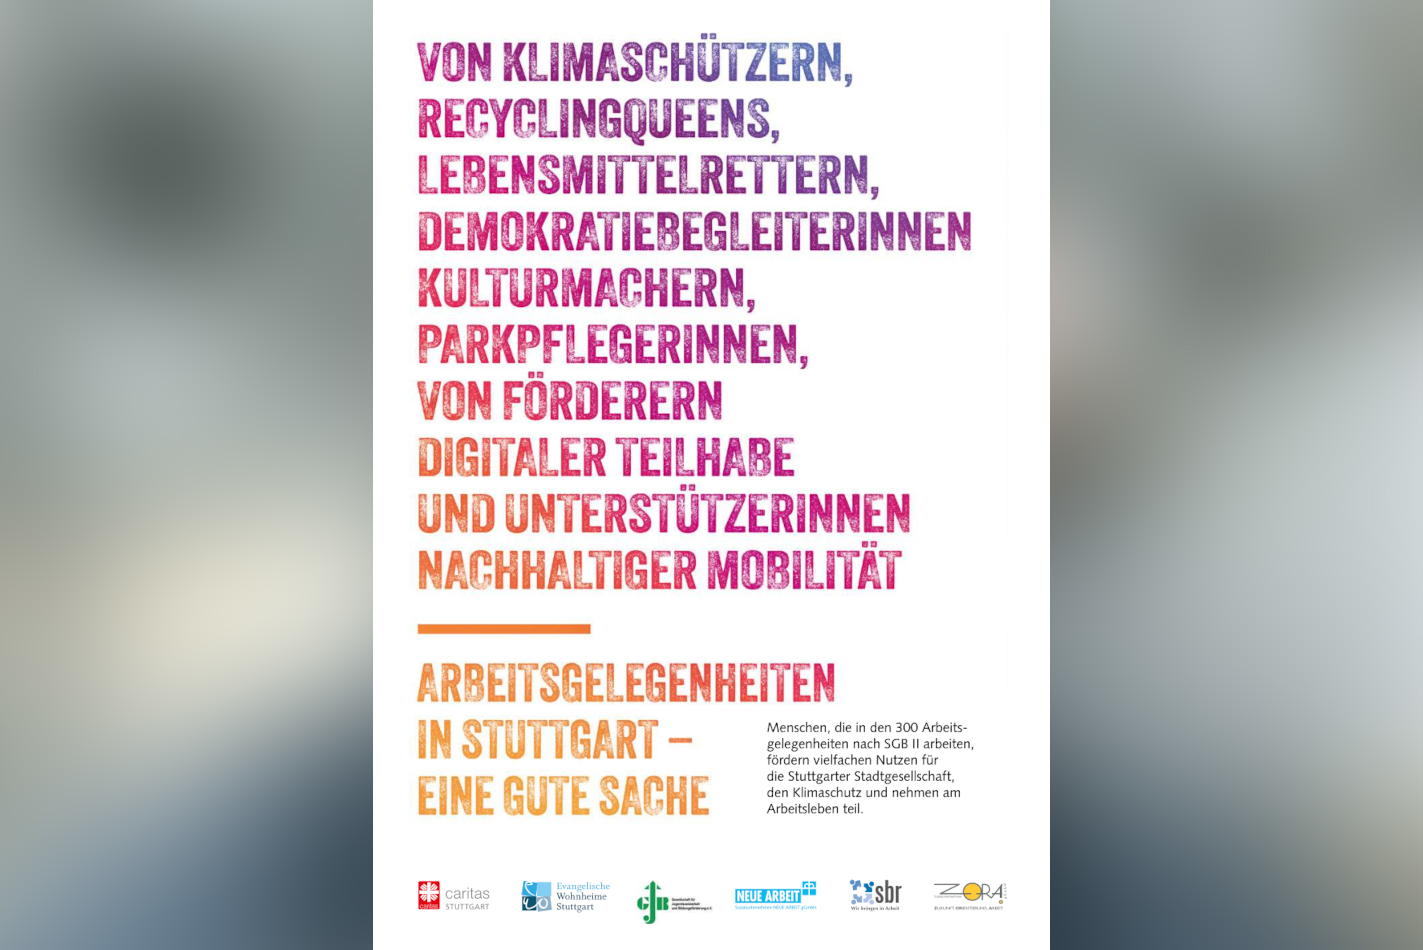 Eine neue Broschüre informiert über die positiven Auswirkungen der Arbeitsgelegenheiten auf Stuttgart